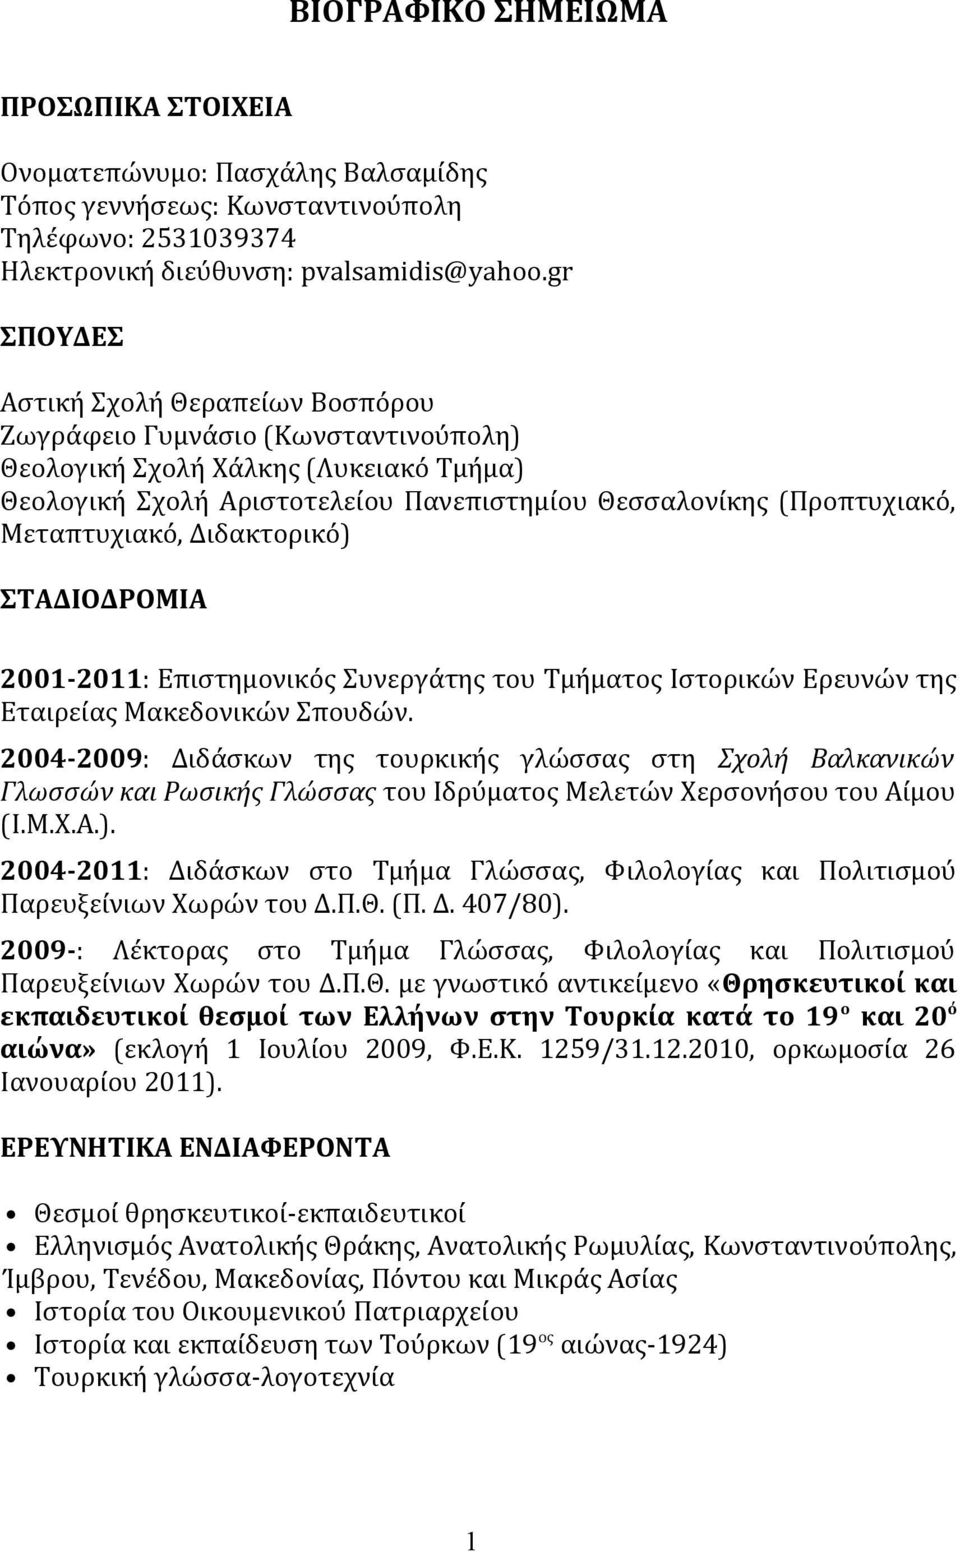 Μεταπτυχιακό, Διδακτορικό) ΣTAΔIOΔPOMIA 2001-2011: Eπιστημονικός Συνεργάτης του Tμήματος Iστορικών Eρευνών της Eταιρείας Mακεδονικών Σπουδών.